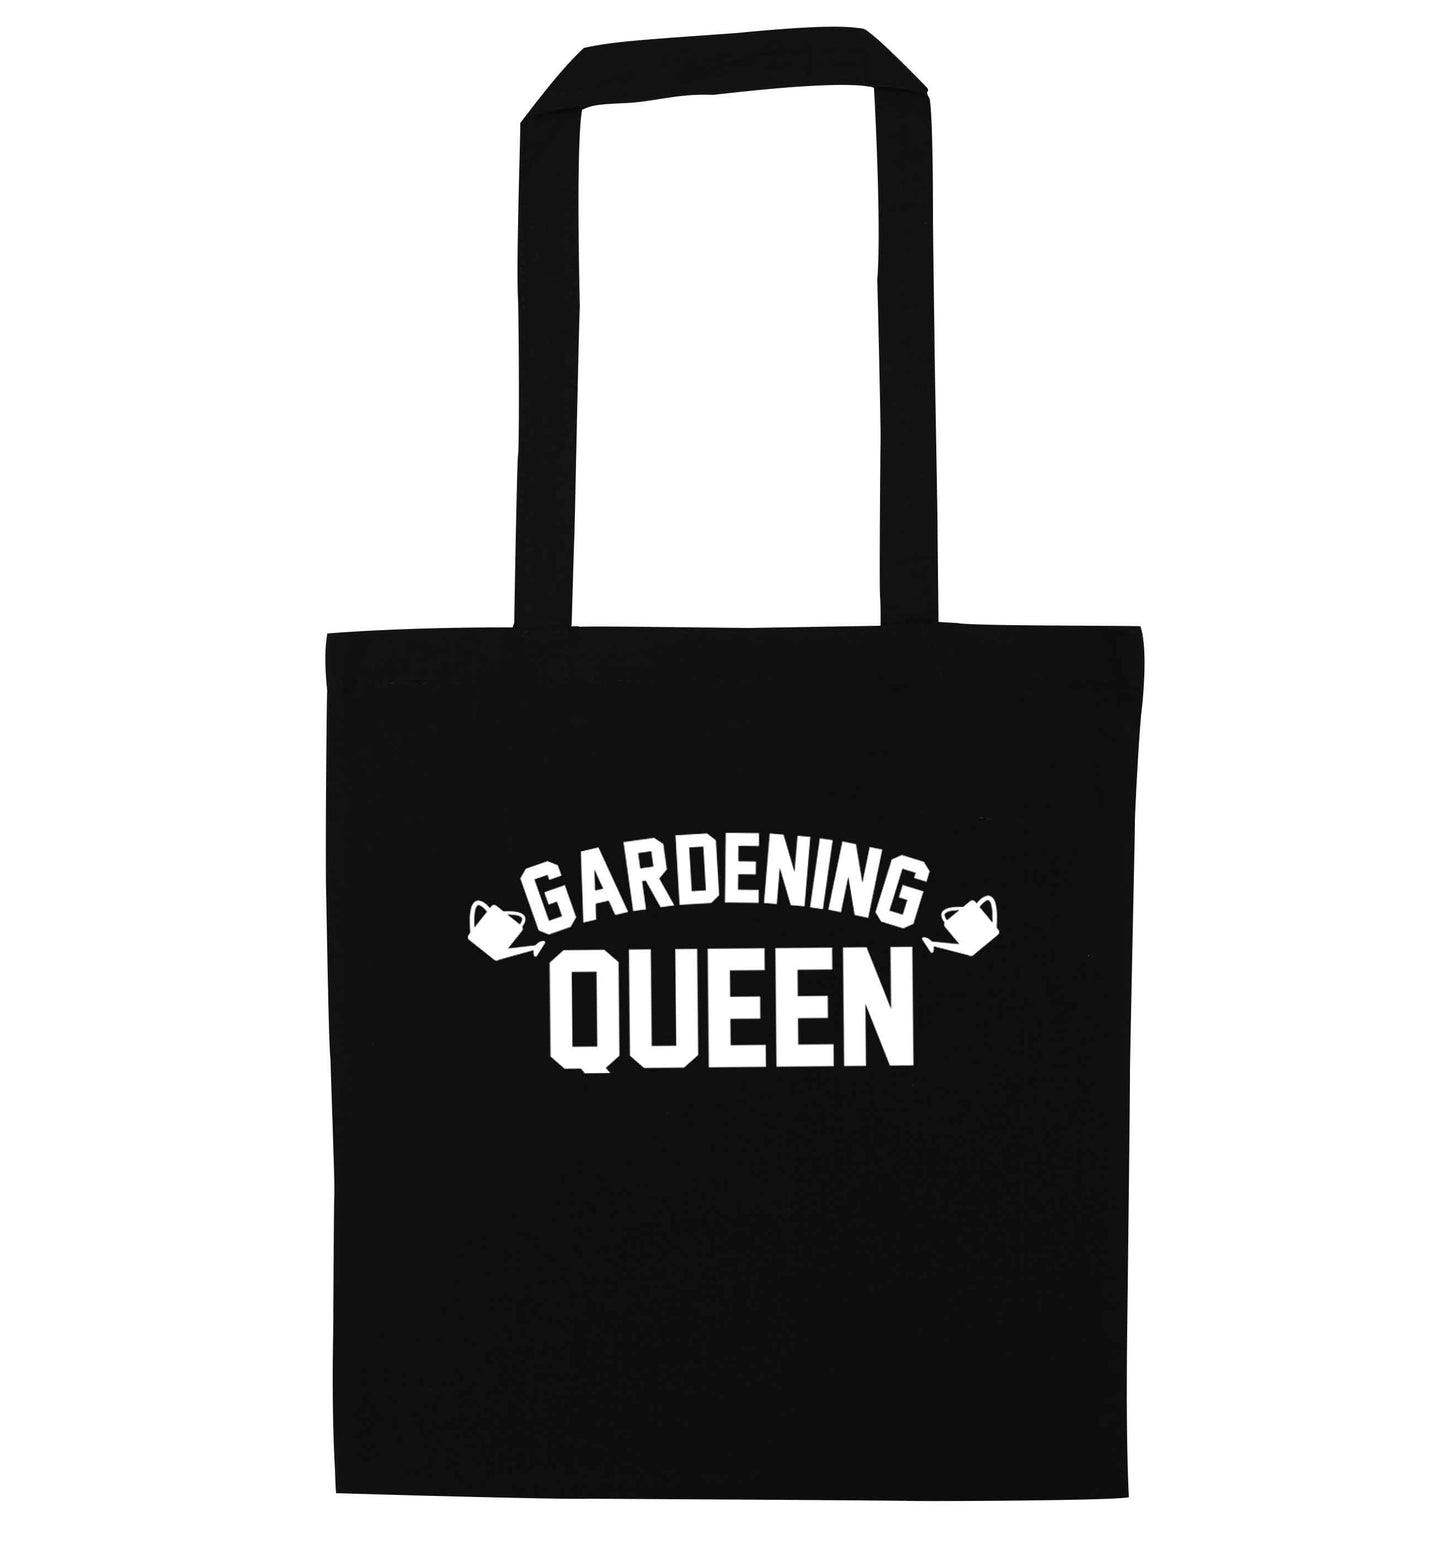 Gardening queen black tote bag